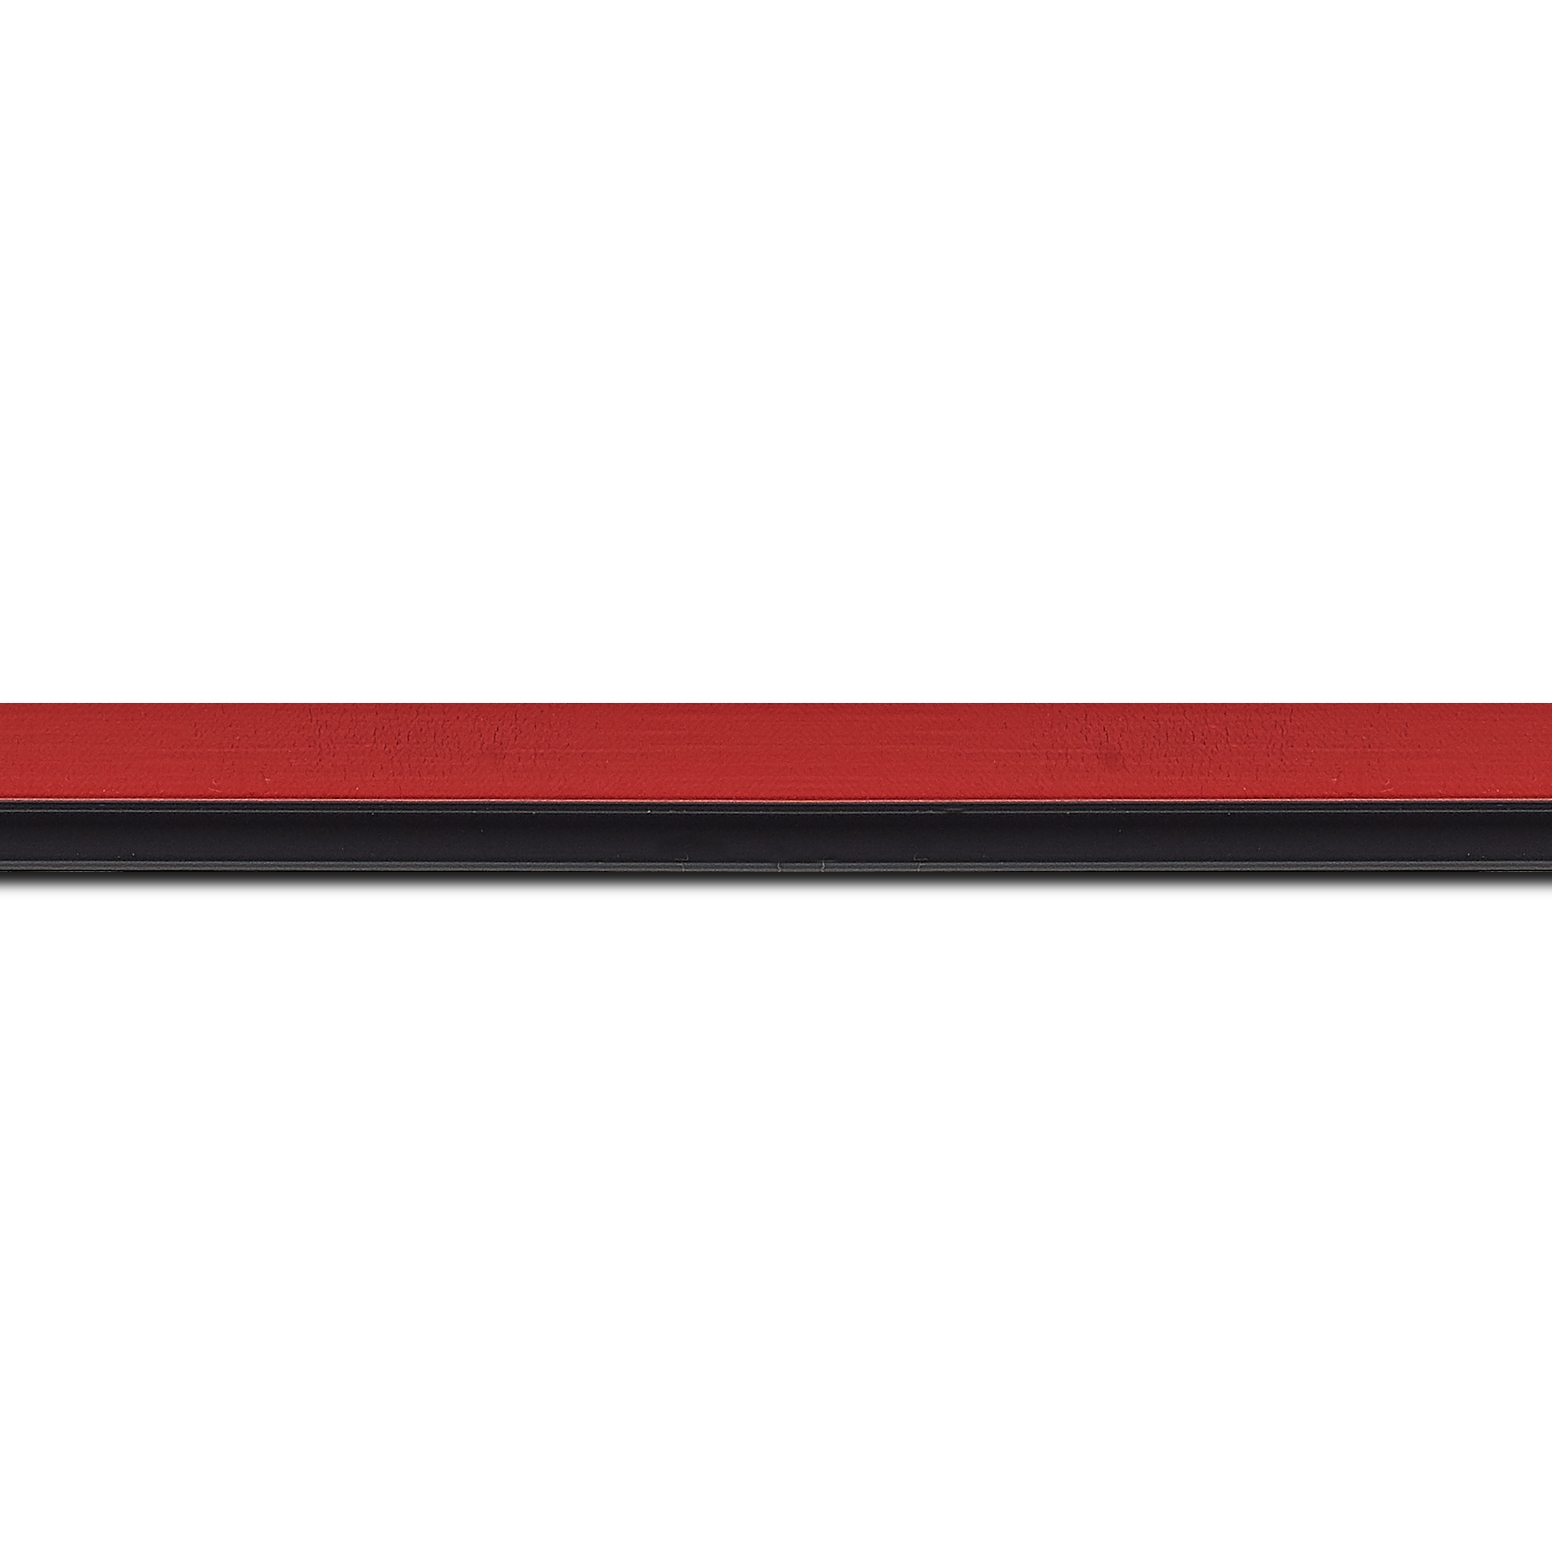 Pack par 12m, bois profil plat largeur 1.6cm couleur rouge satiné filet noir en retrait de la face du cadre de 6mm assurant un effet très original (longueur baguette pouvant varier entre 2.40m et 3m selon arrivage des bois)